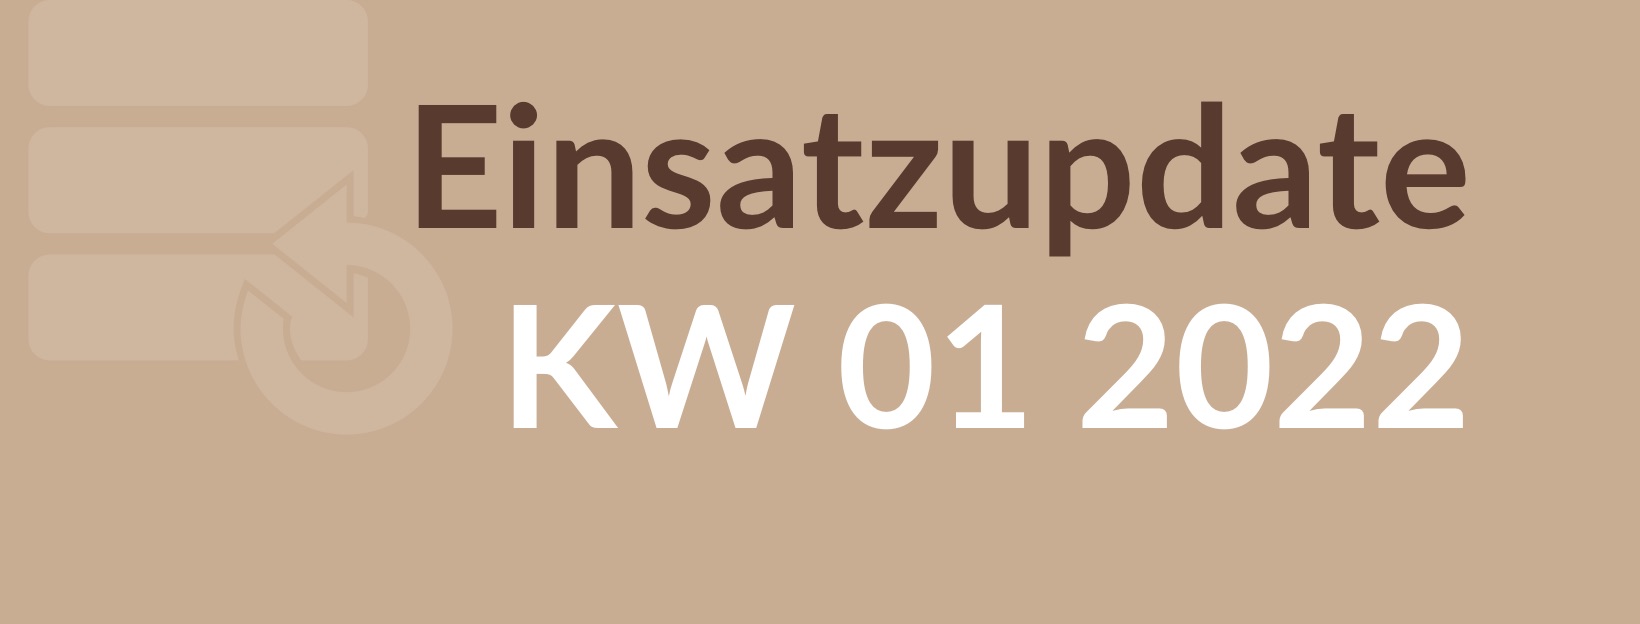 2201_Einsatzupdate